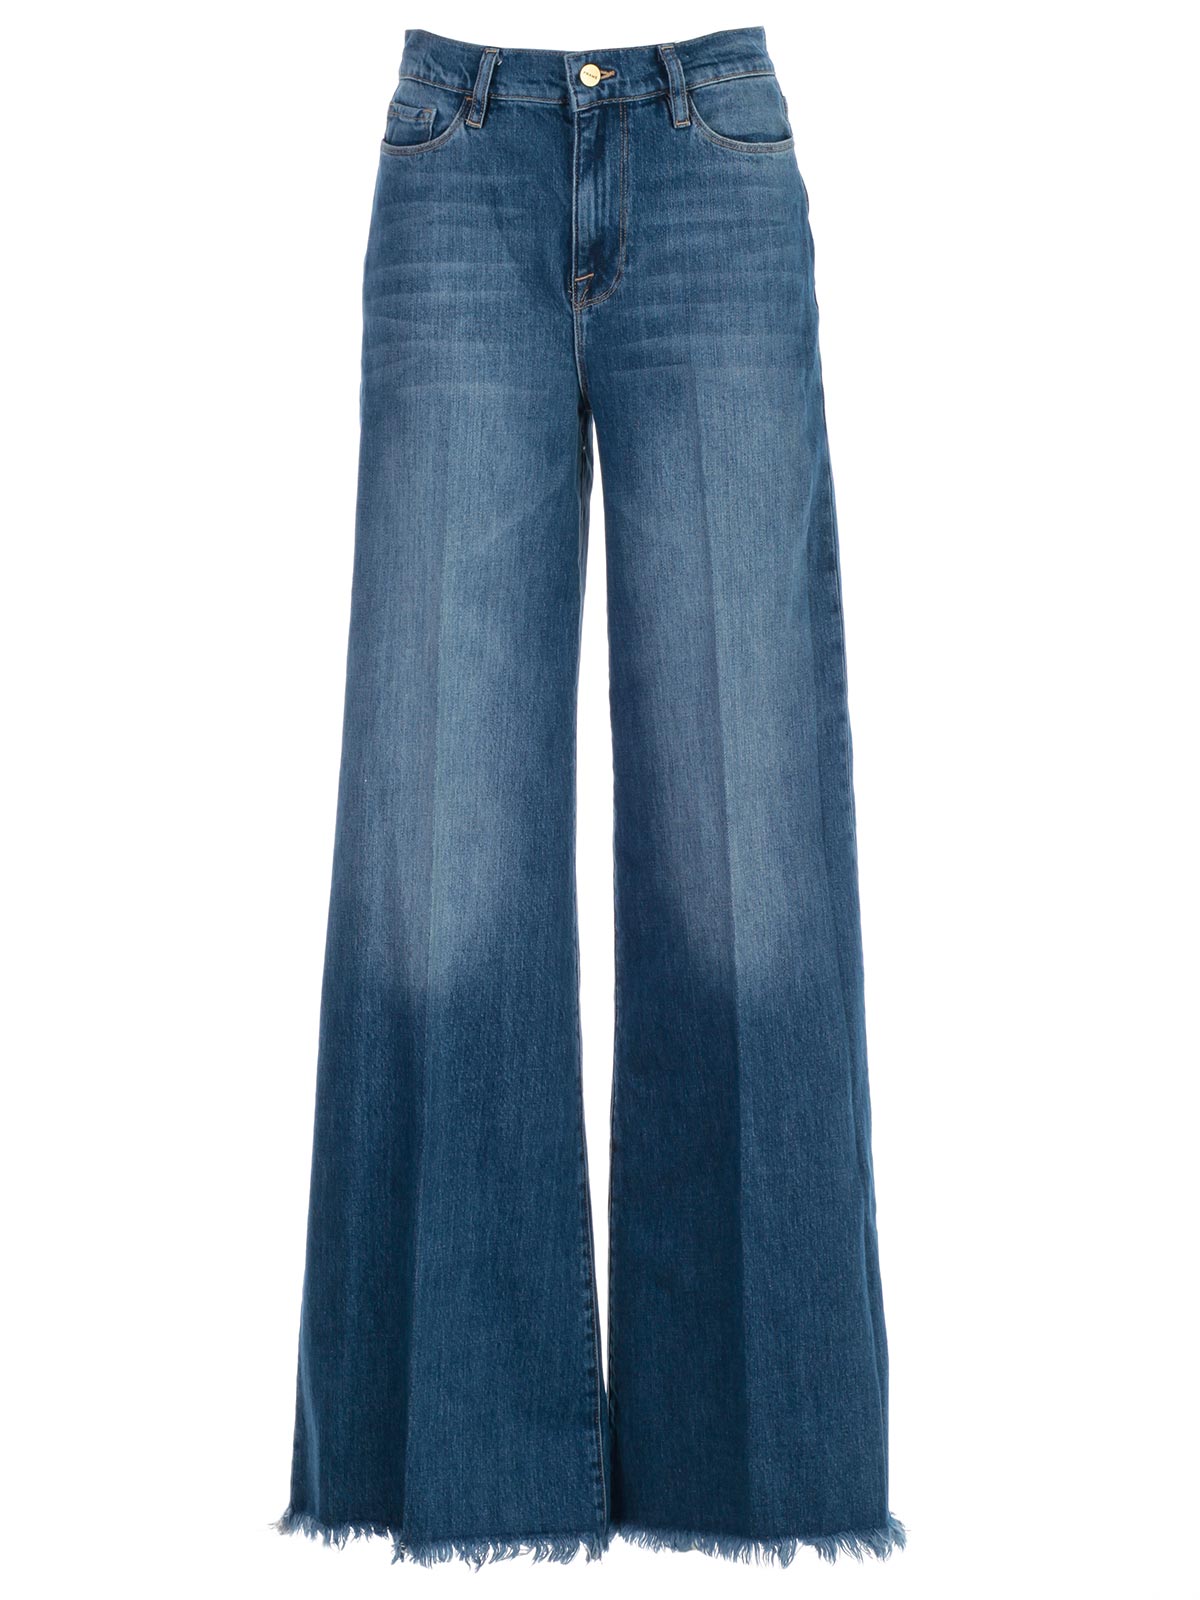 frame jeans online